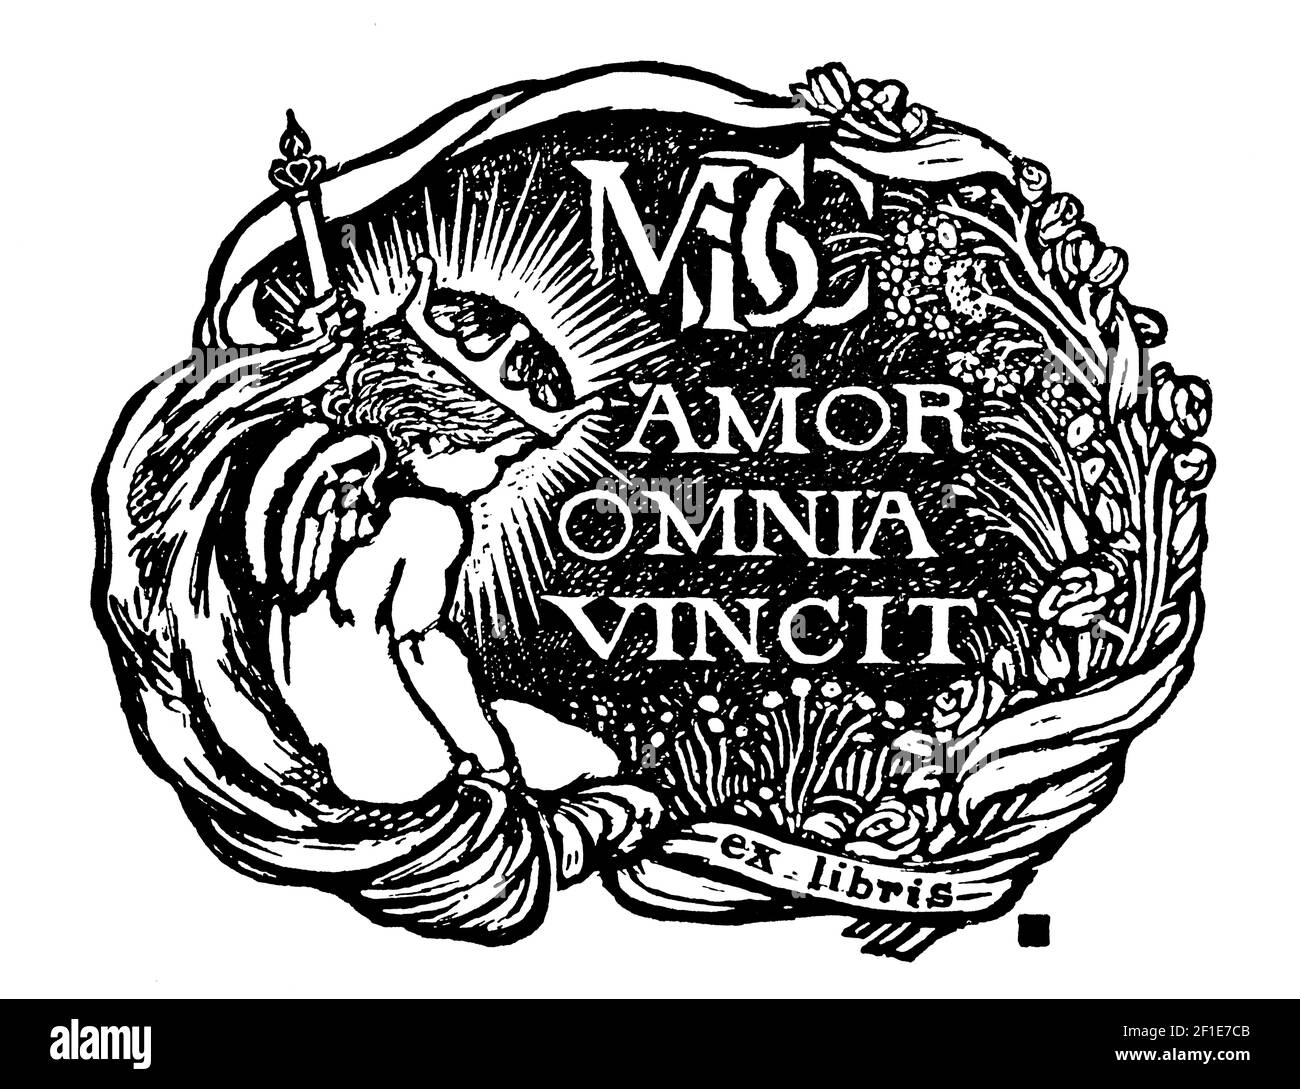 Omnia vincit amor, Love Conquers all things, persönliches Exlibris, entworfen von dem schottischen Künstler, Typografen, Holzstecher und Drucker James Guthrie Stockfoto